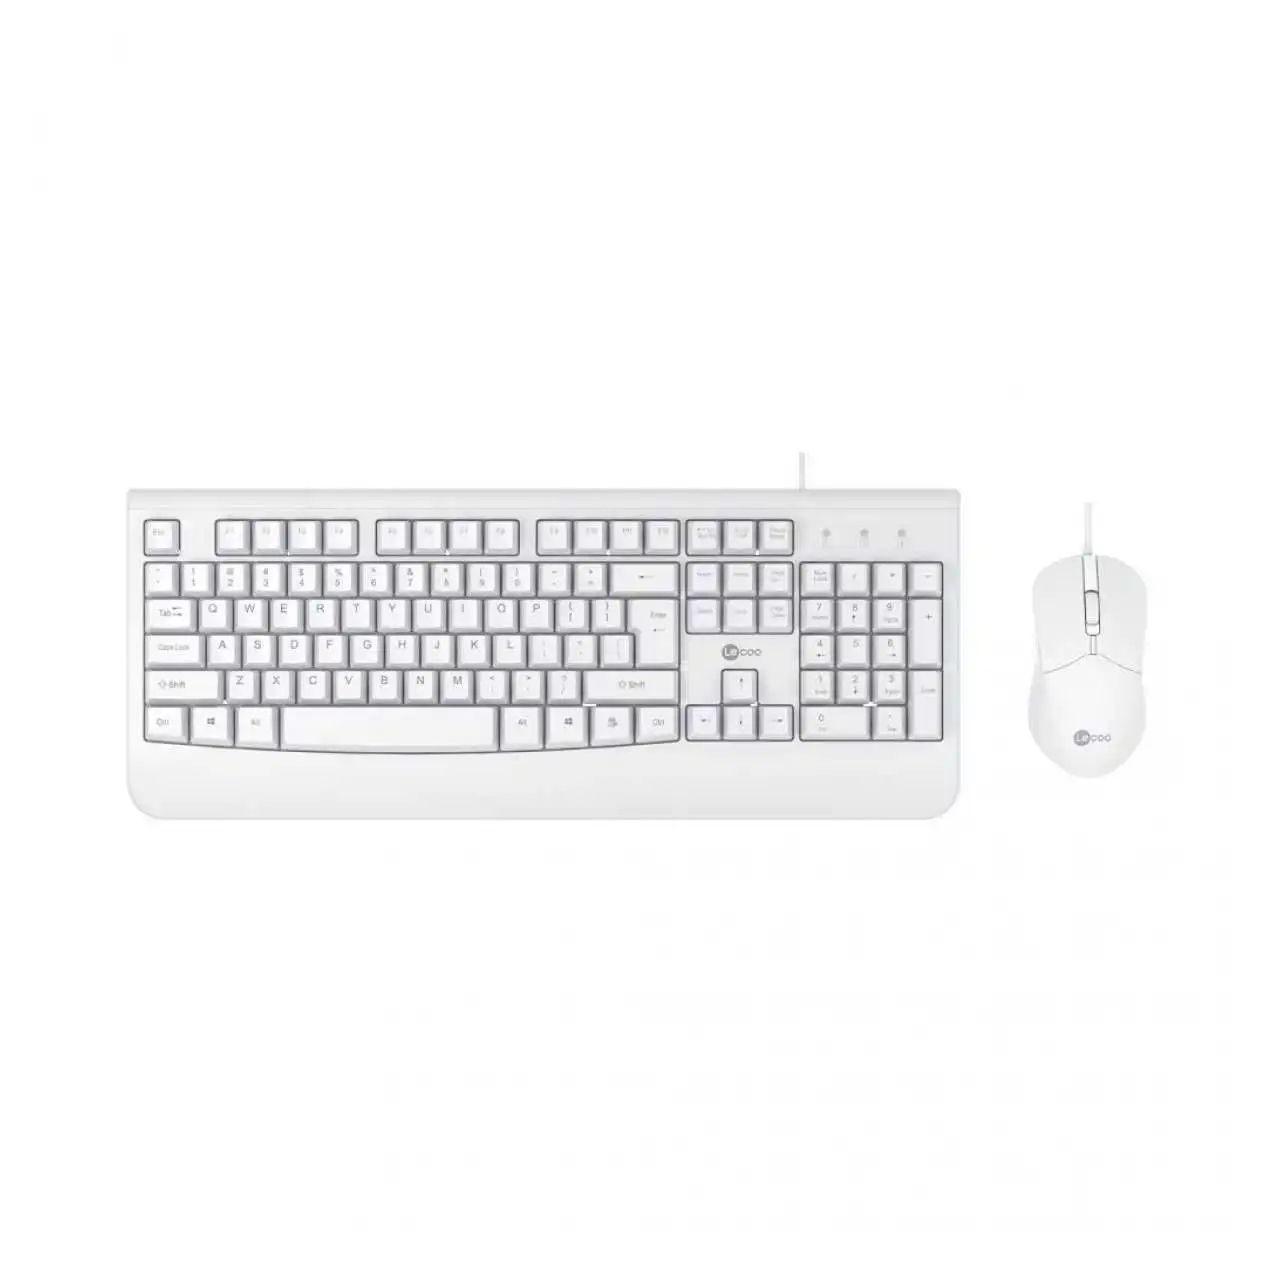 lenovo-lecoo-cm105-beyaz-kablolu-mouse-klavye-set-ürün-resmi